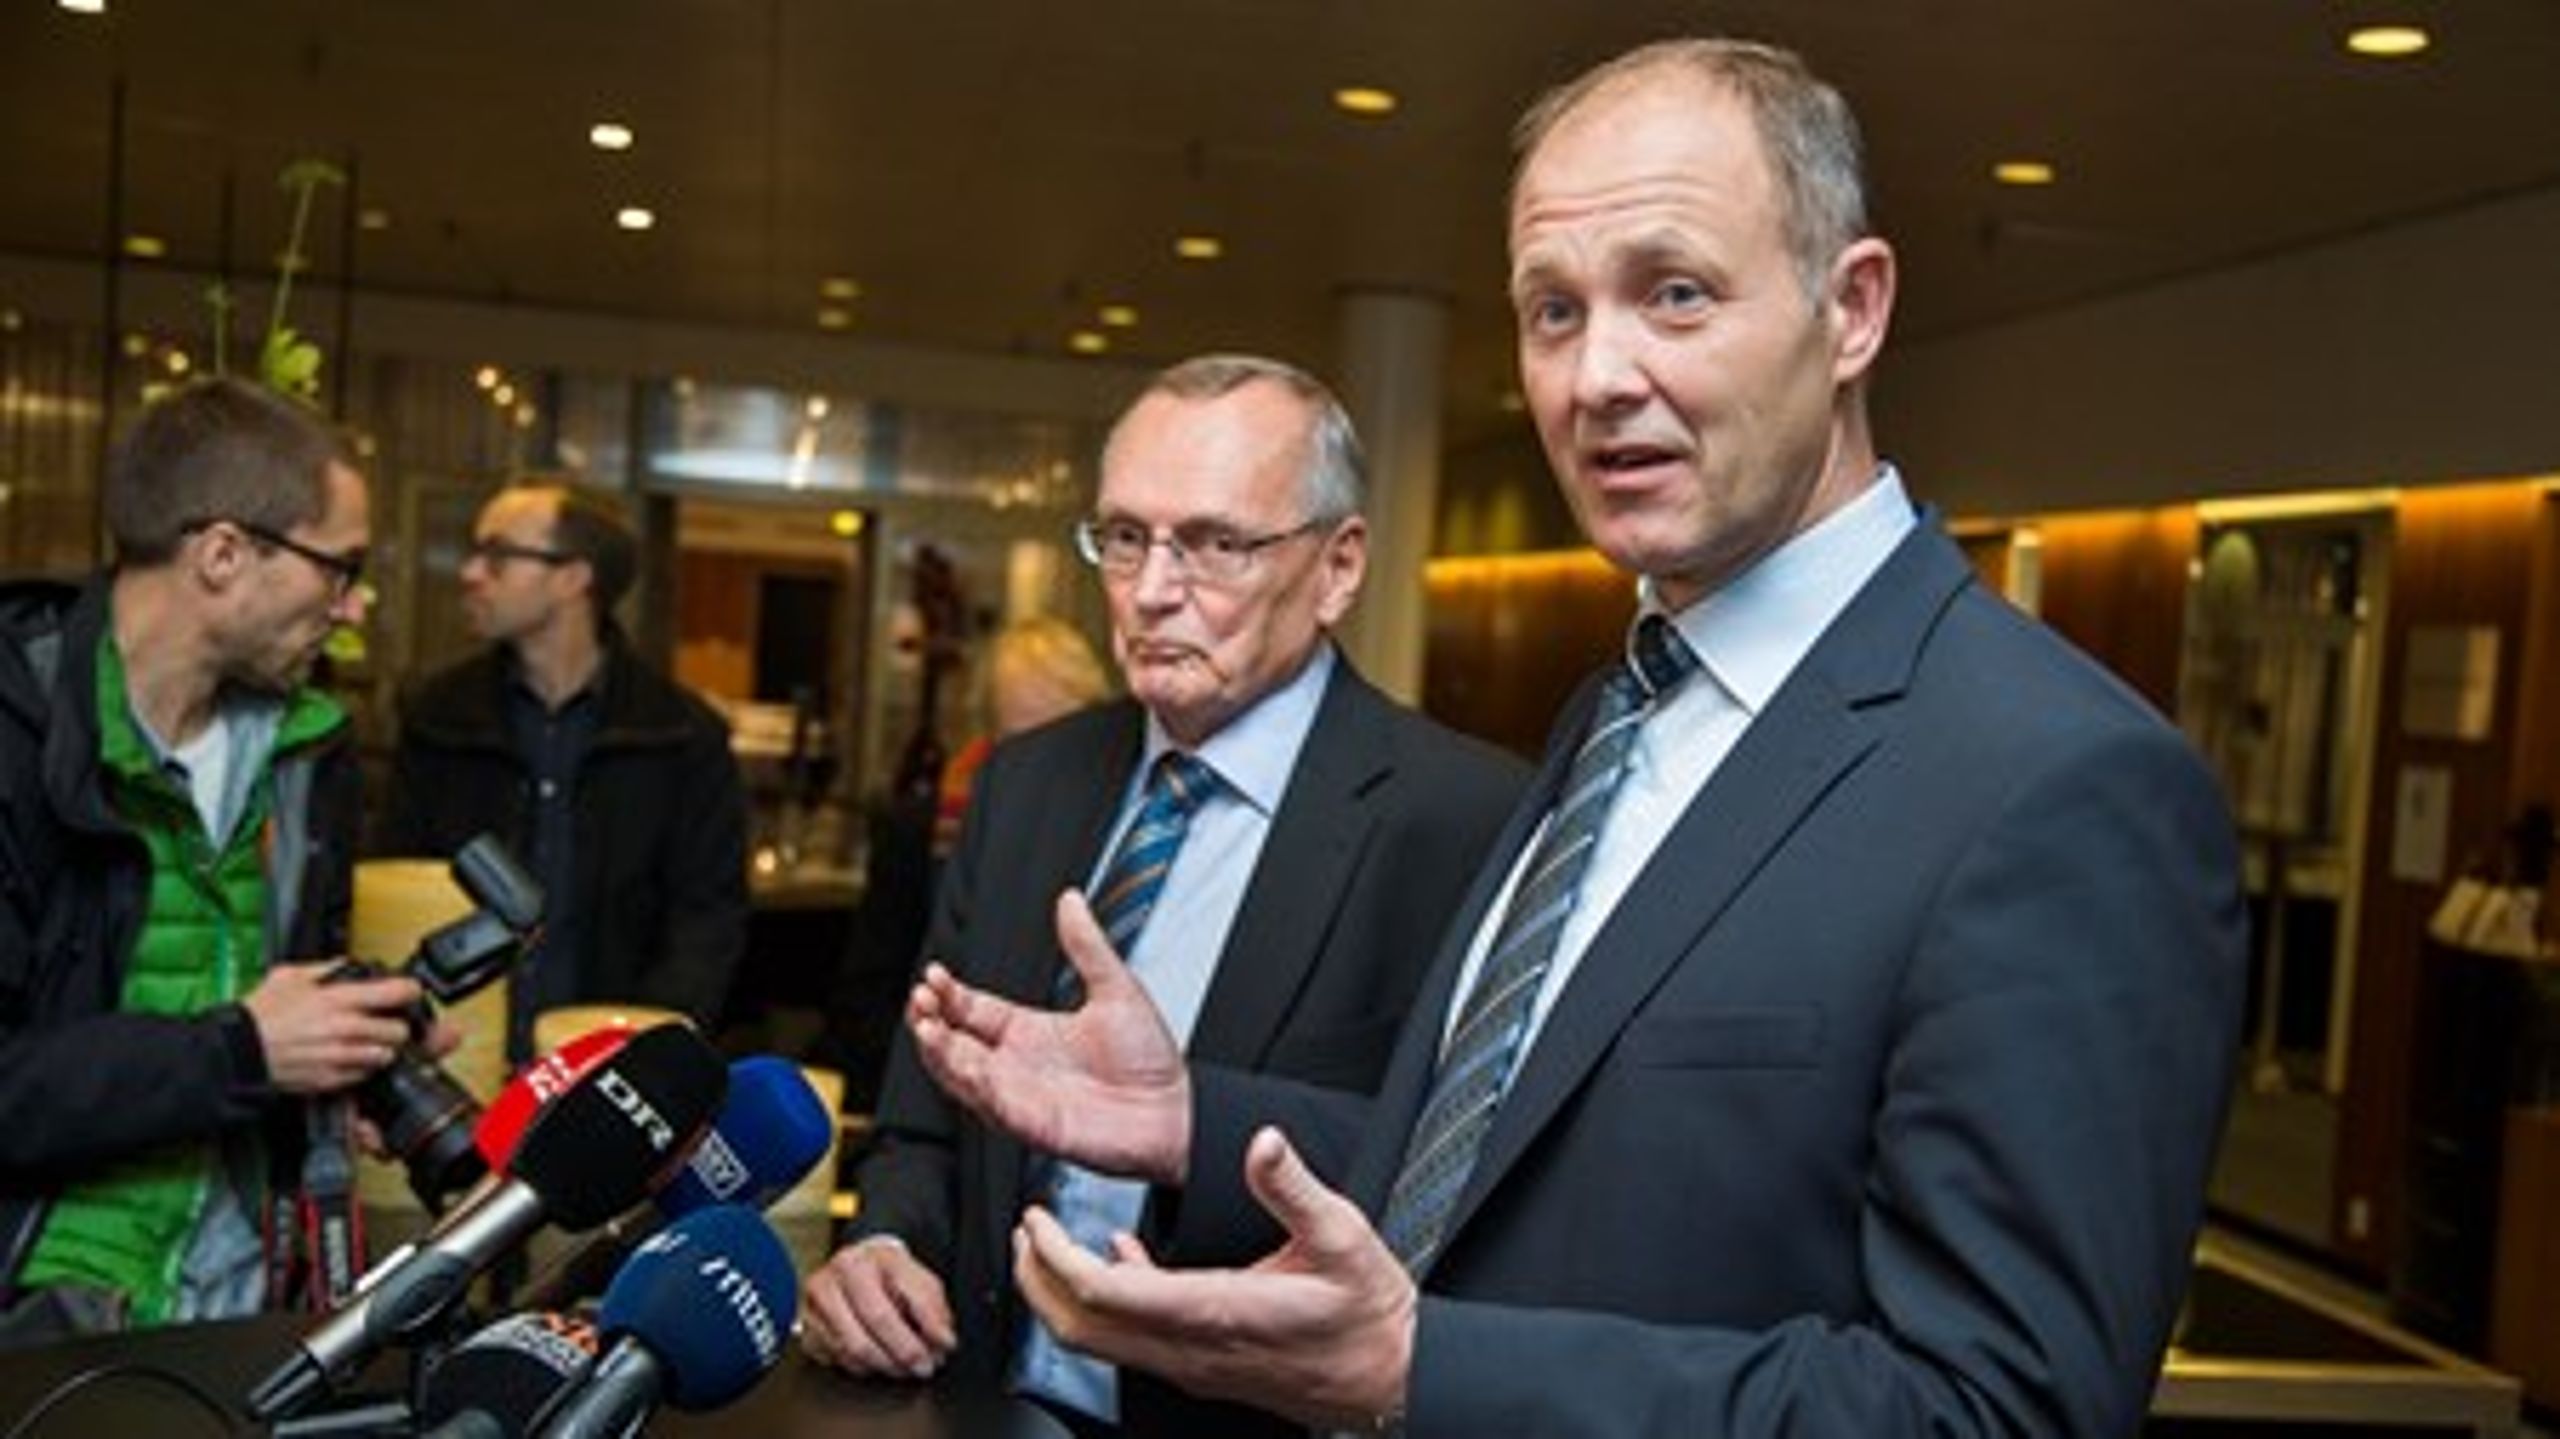 Formand for Danske Regioner, Bent Hansen (S) og formand for KL, Martin Damm (V), præsenterede fredag formiddag planen om en fusion mellem de to organisationer.&nbsp;